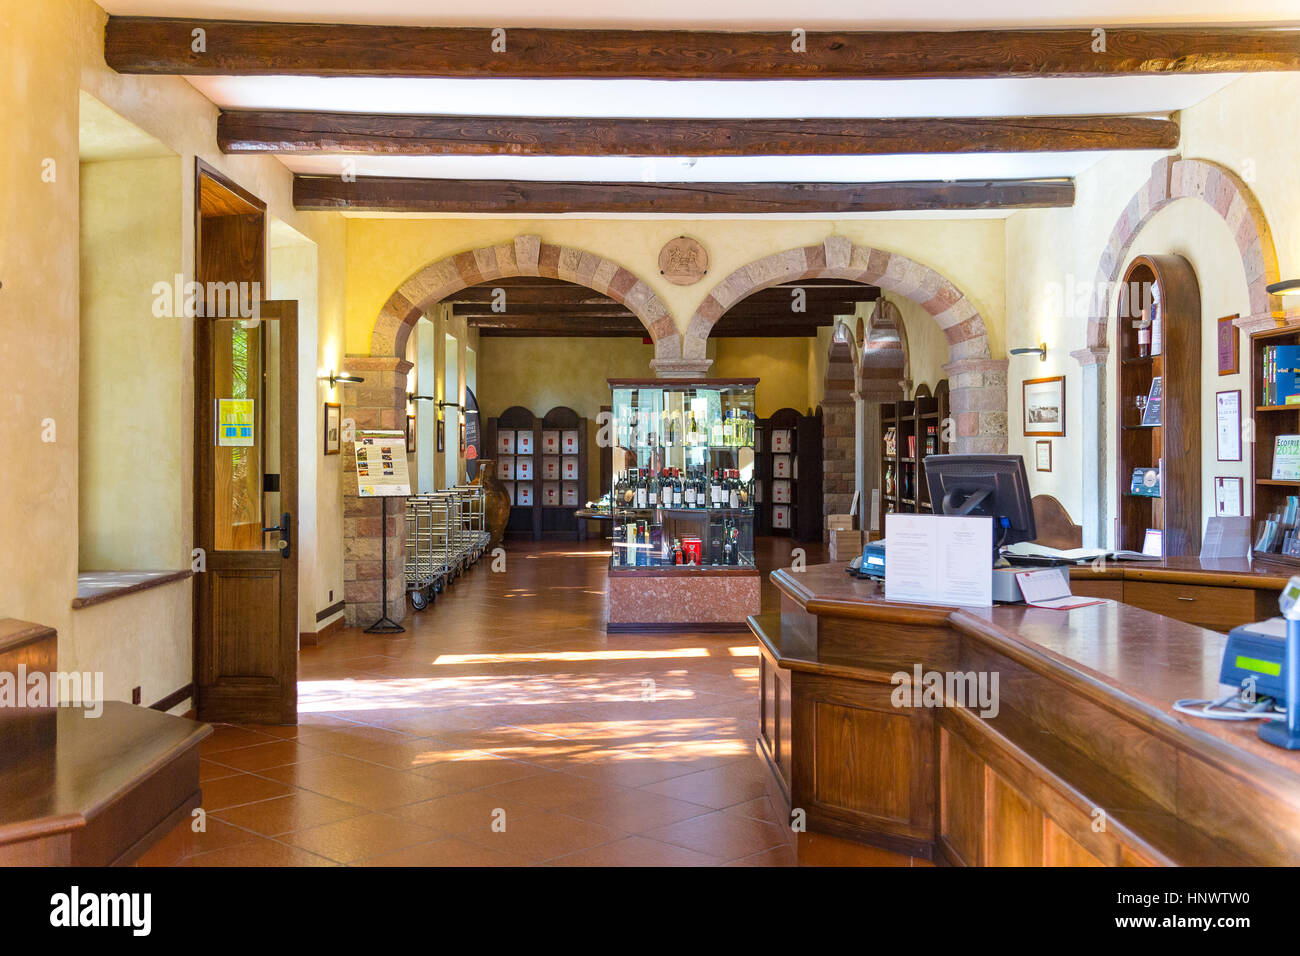 The wine shop at the Sella & Mosca's vinery built in 1903 near Alghero, Sassari, Sardinia Italy Stock Photo